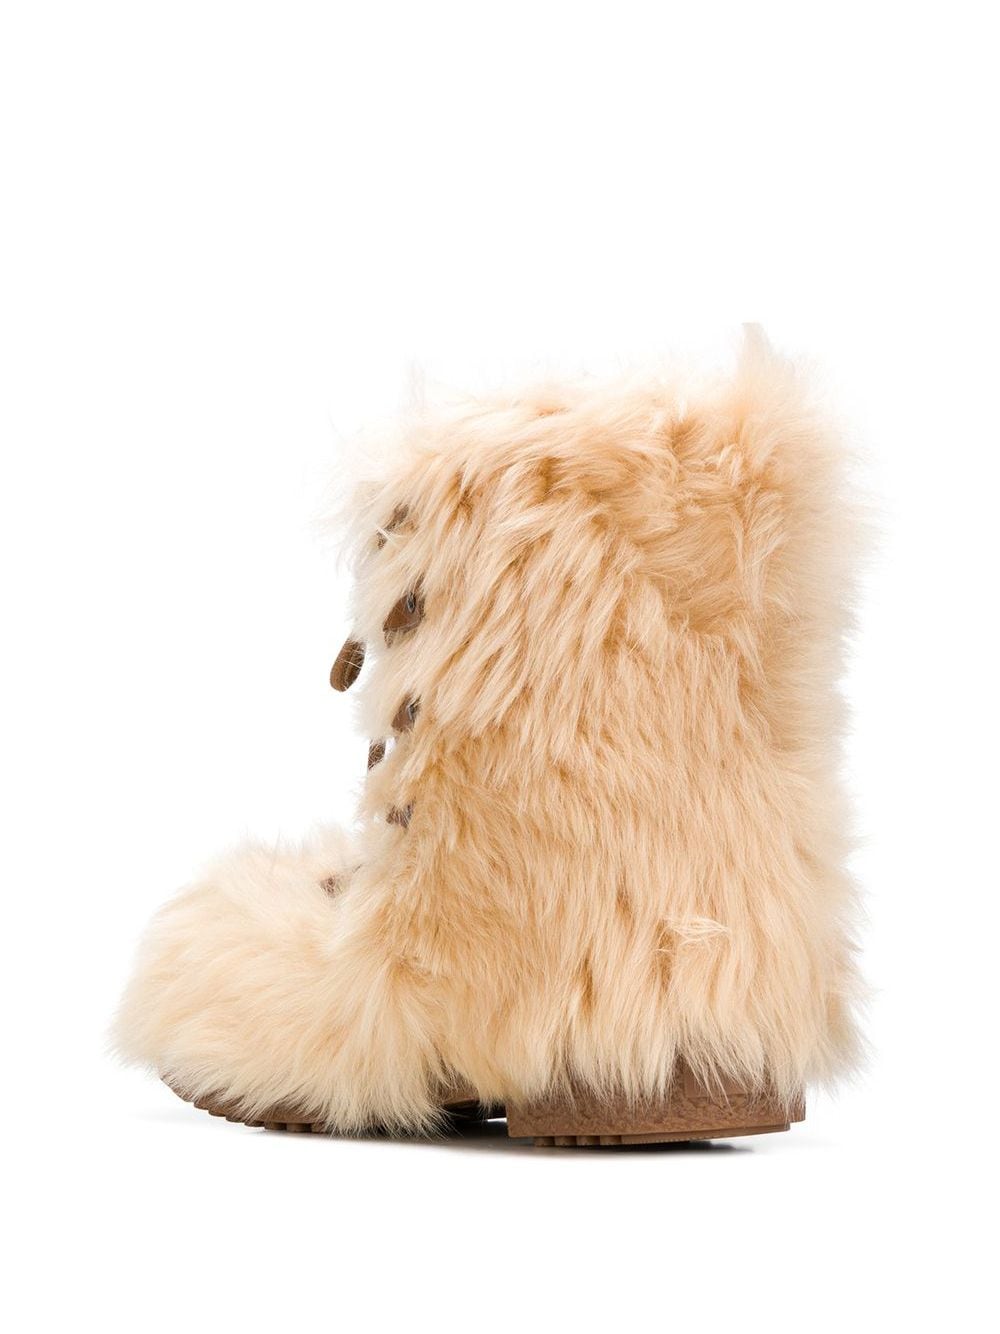 saint laurent boots with fur